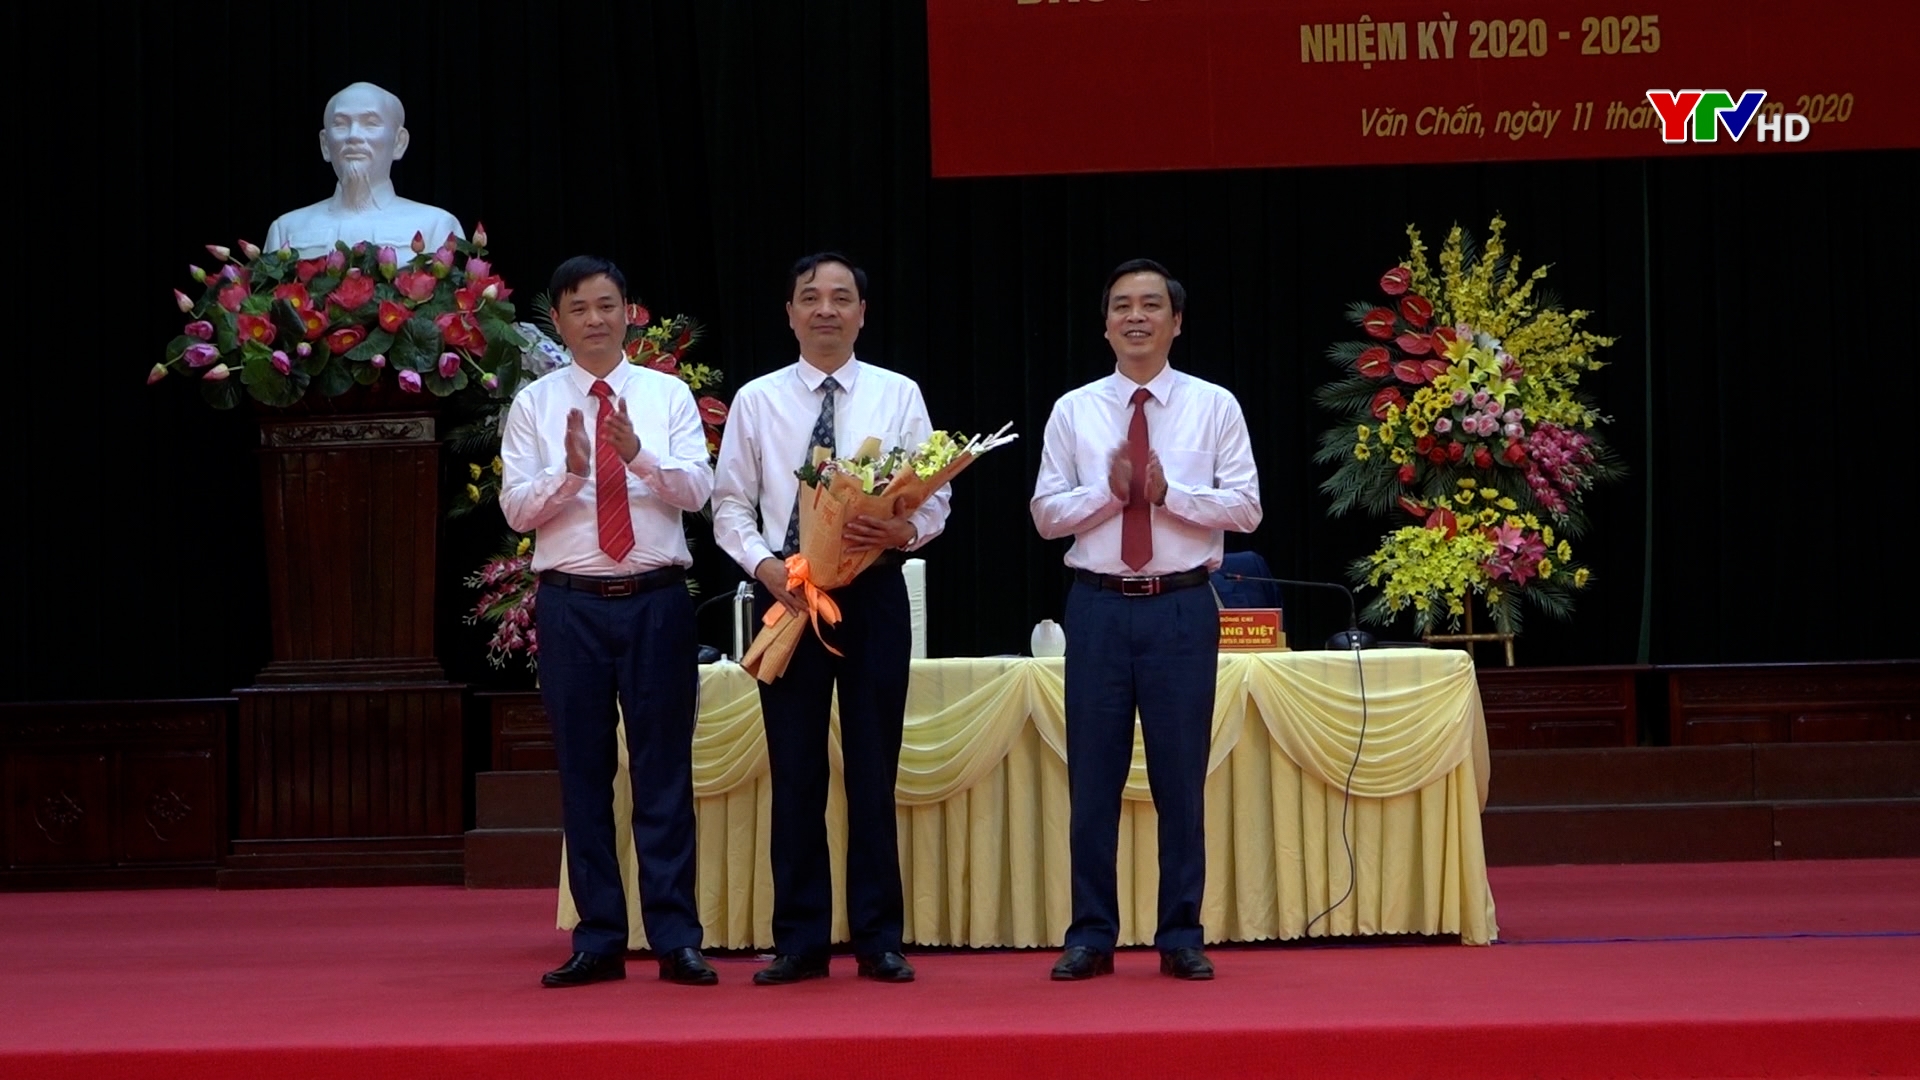 Đồng chí Đặng Duy Hiển được bầu giữ chức Chủ tịch UBND huyện Văn Chấn, nhiệm kỳ 2016 - 2021